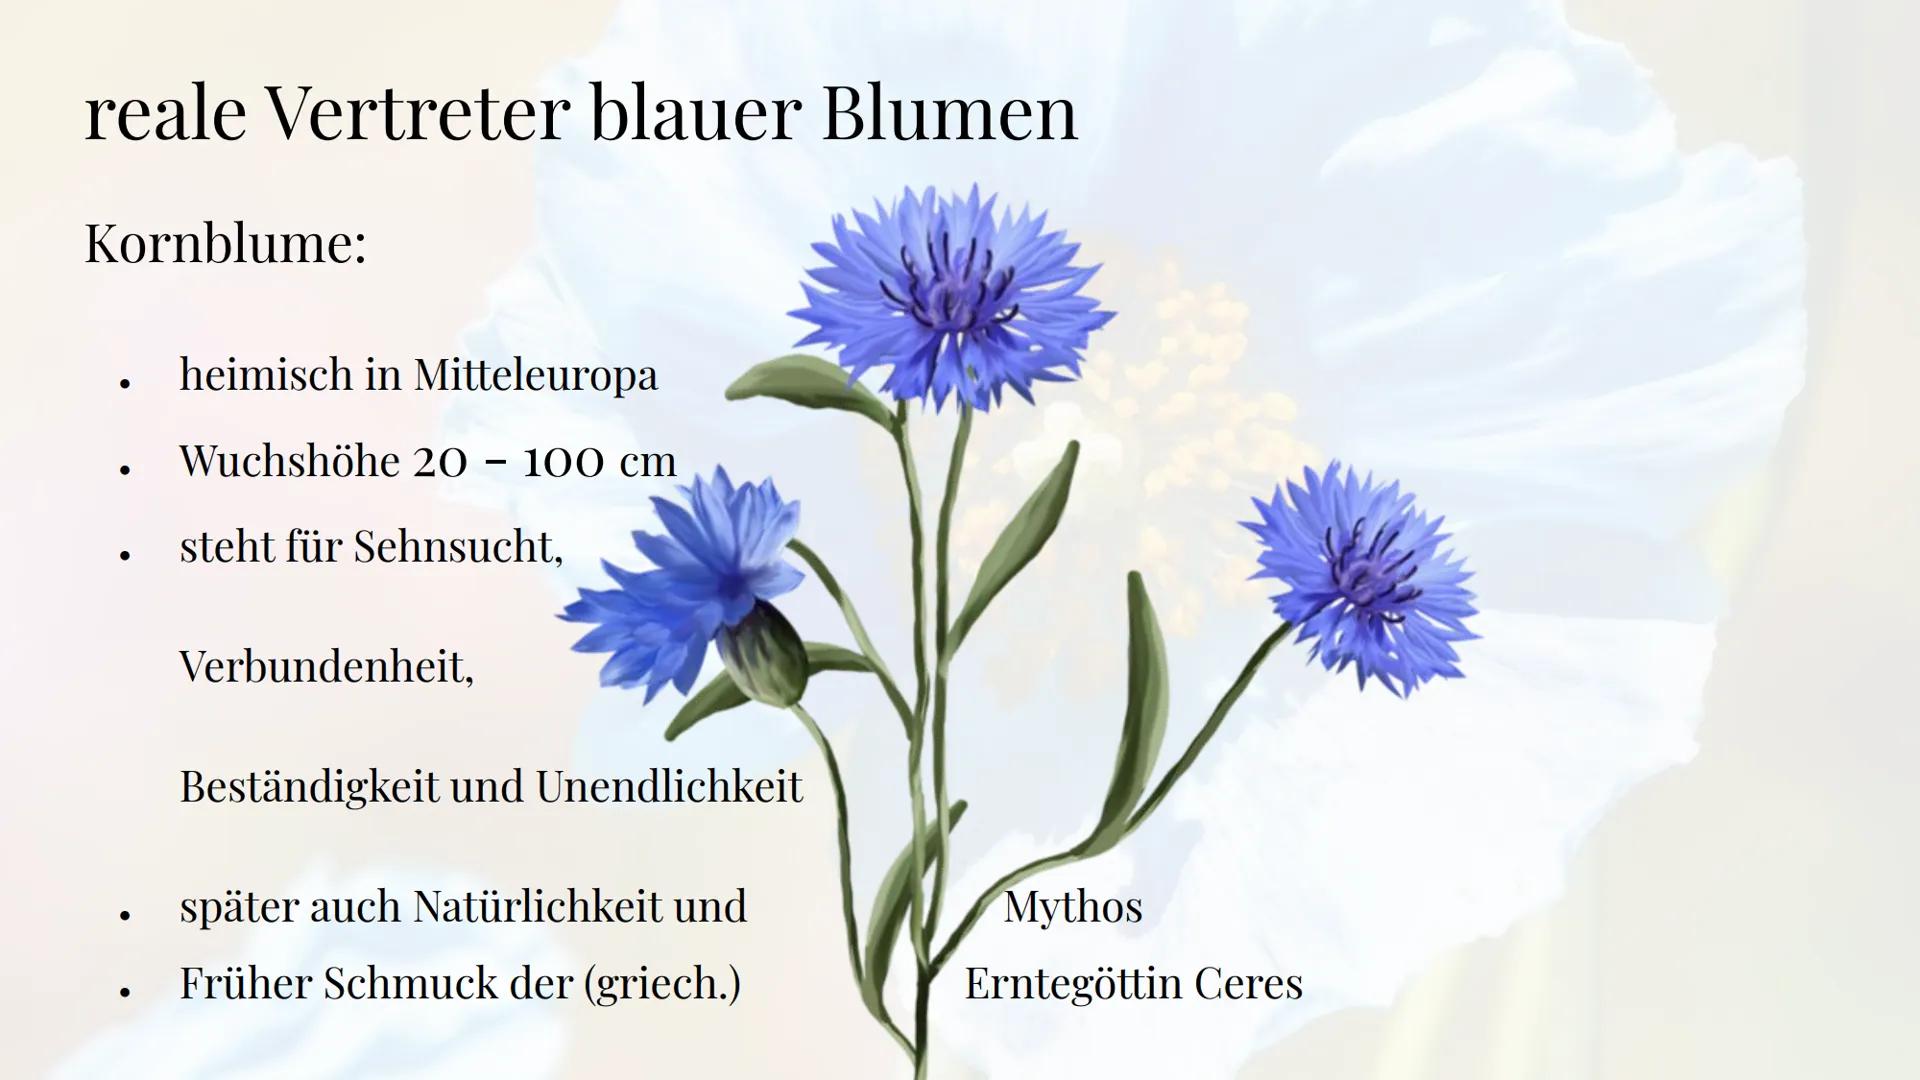 Die Sehnsucht
nach der blauen Blume
Die Romantik Sebastian Hinz
Thüringenkolleg
K Gliederung:
●
●
●
●
●
●
●
●
●
die Farbe Blau
Warum Blumen 